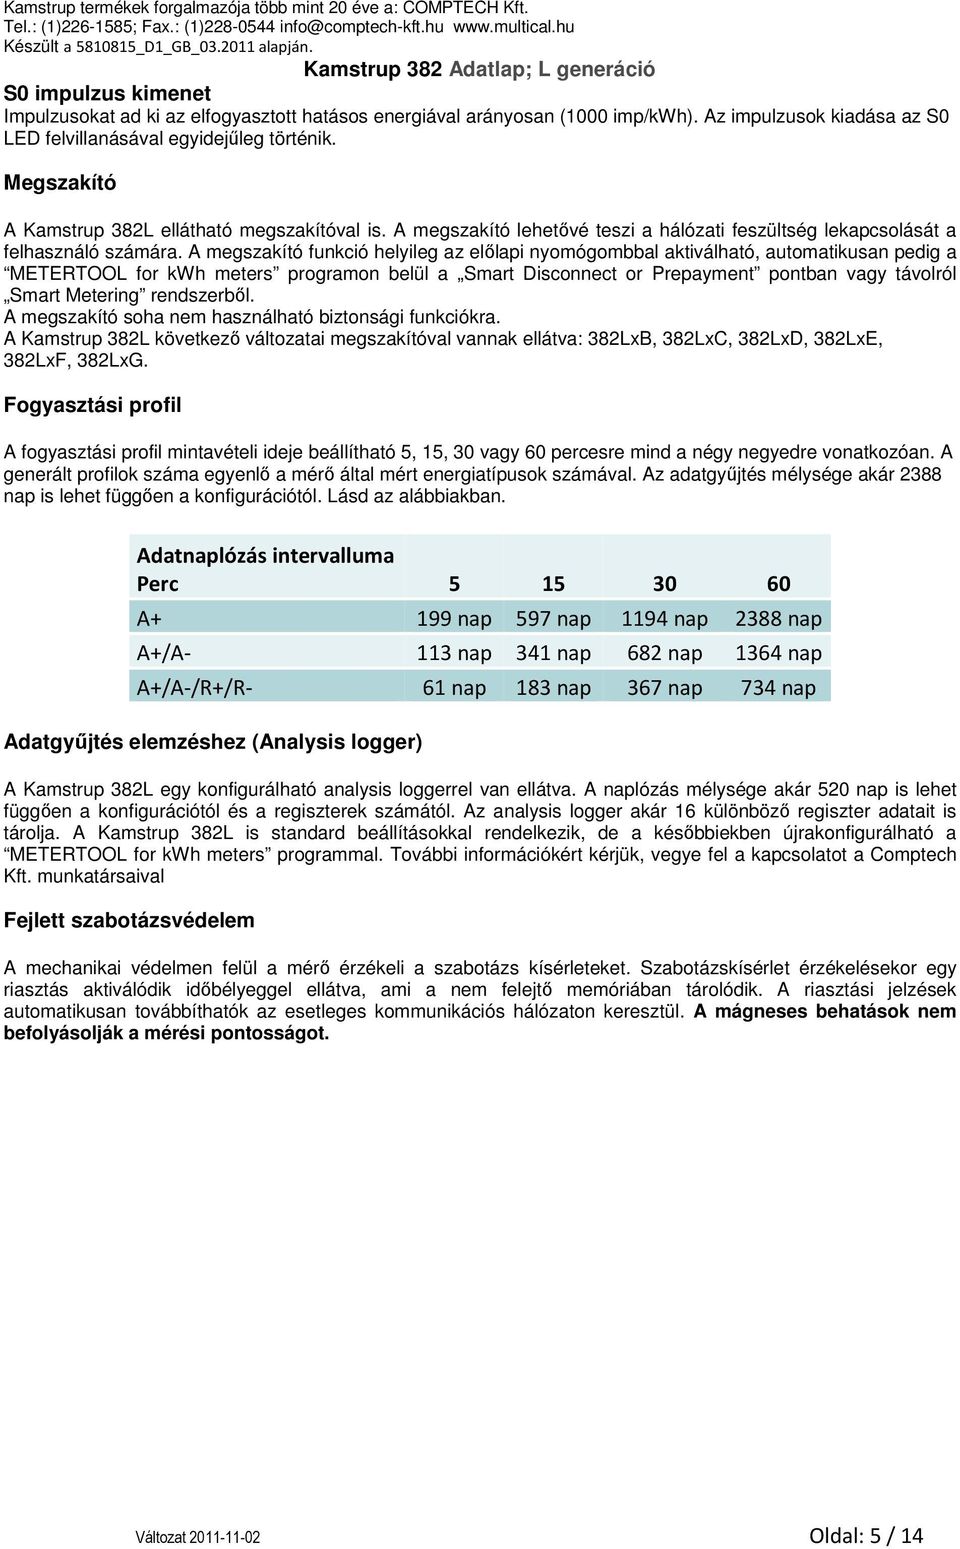 Kamstrup 382 Adatlap - L generáció - PDF Ingyenes letöltés